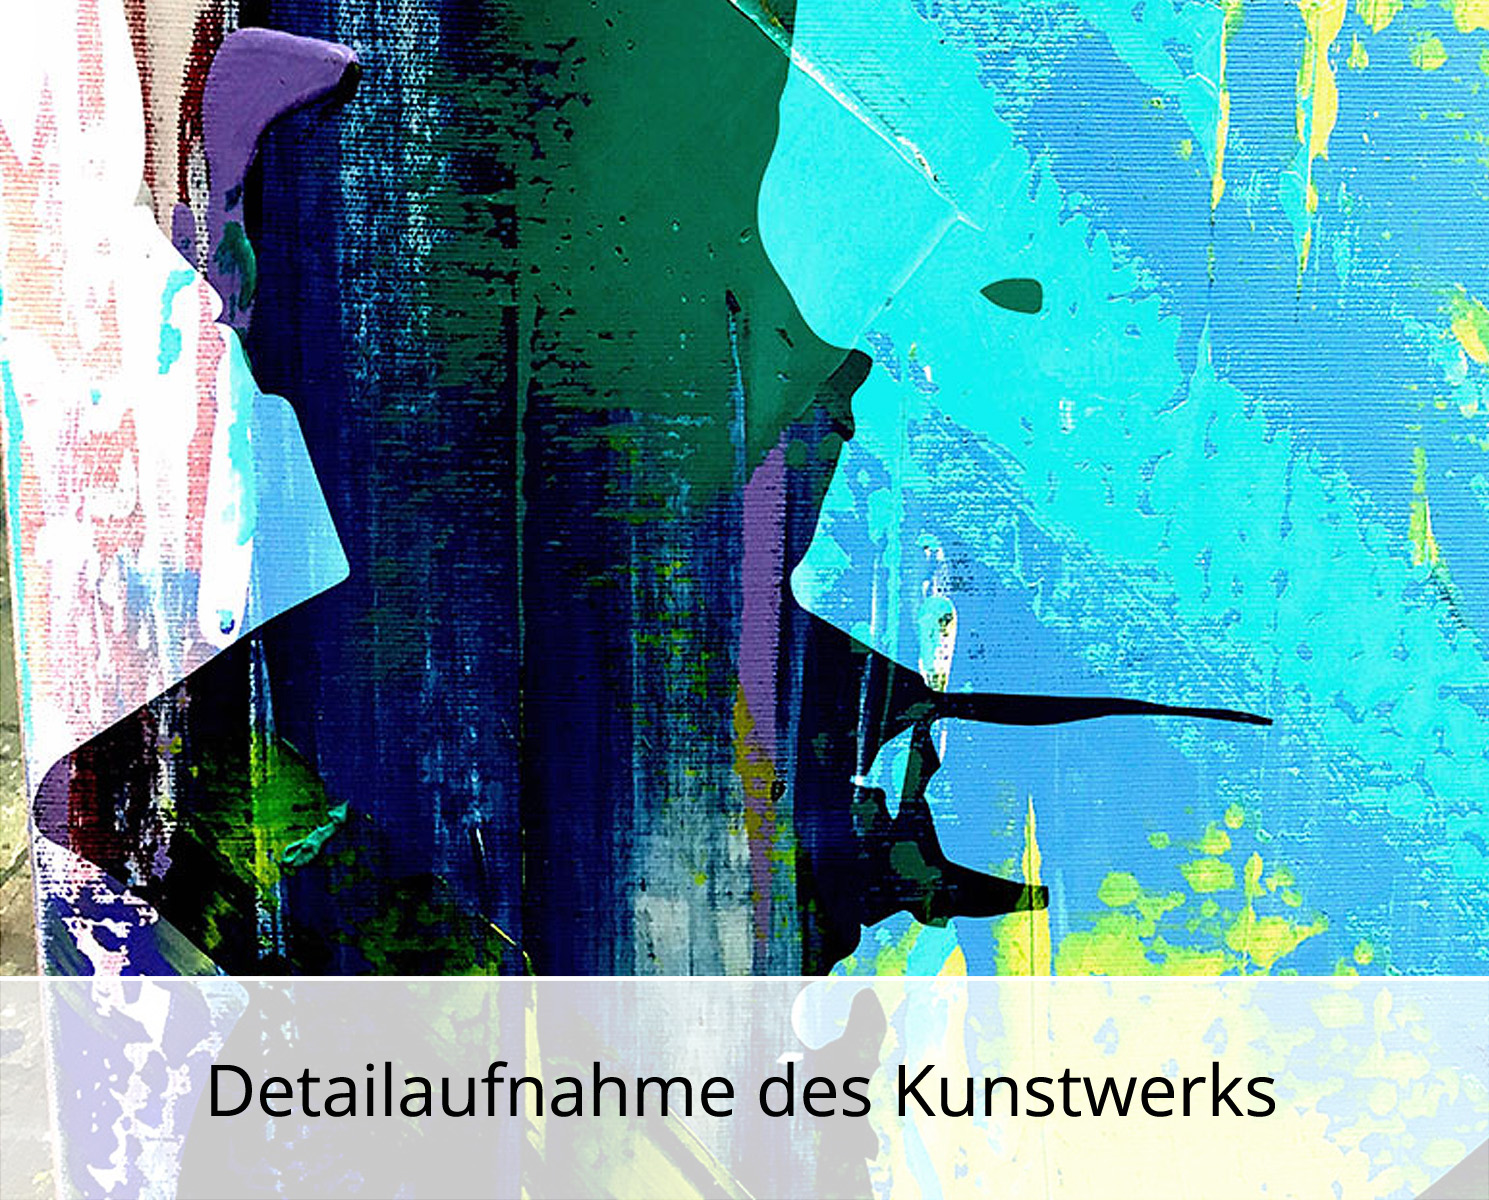 Kunstdruck, signiert: Paul, Holger Mühlbauer-Gardemin, Edition